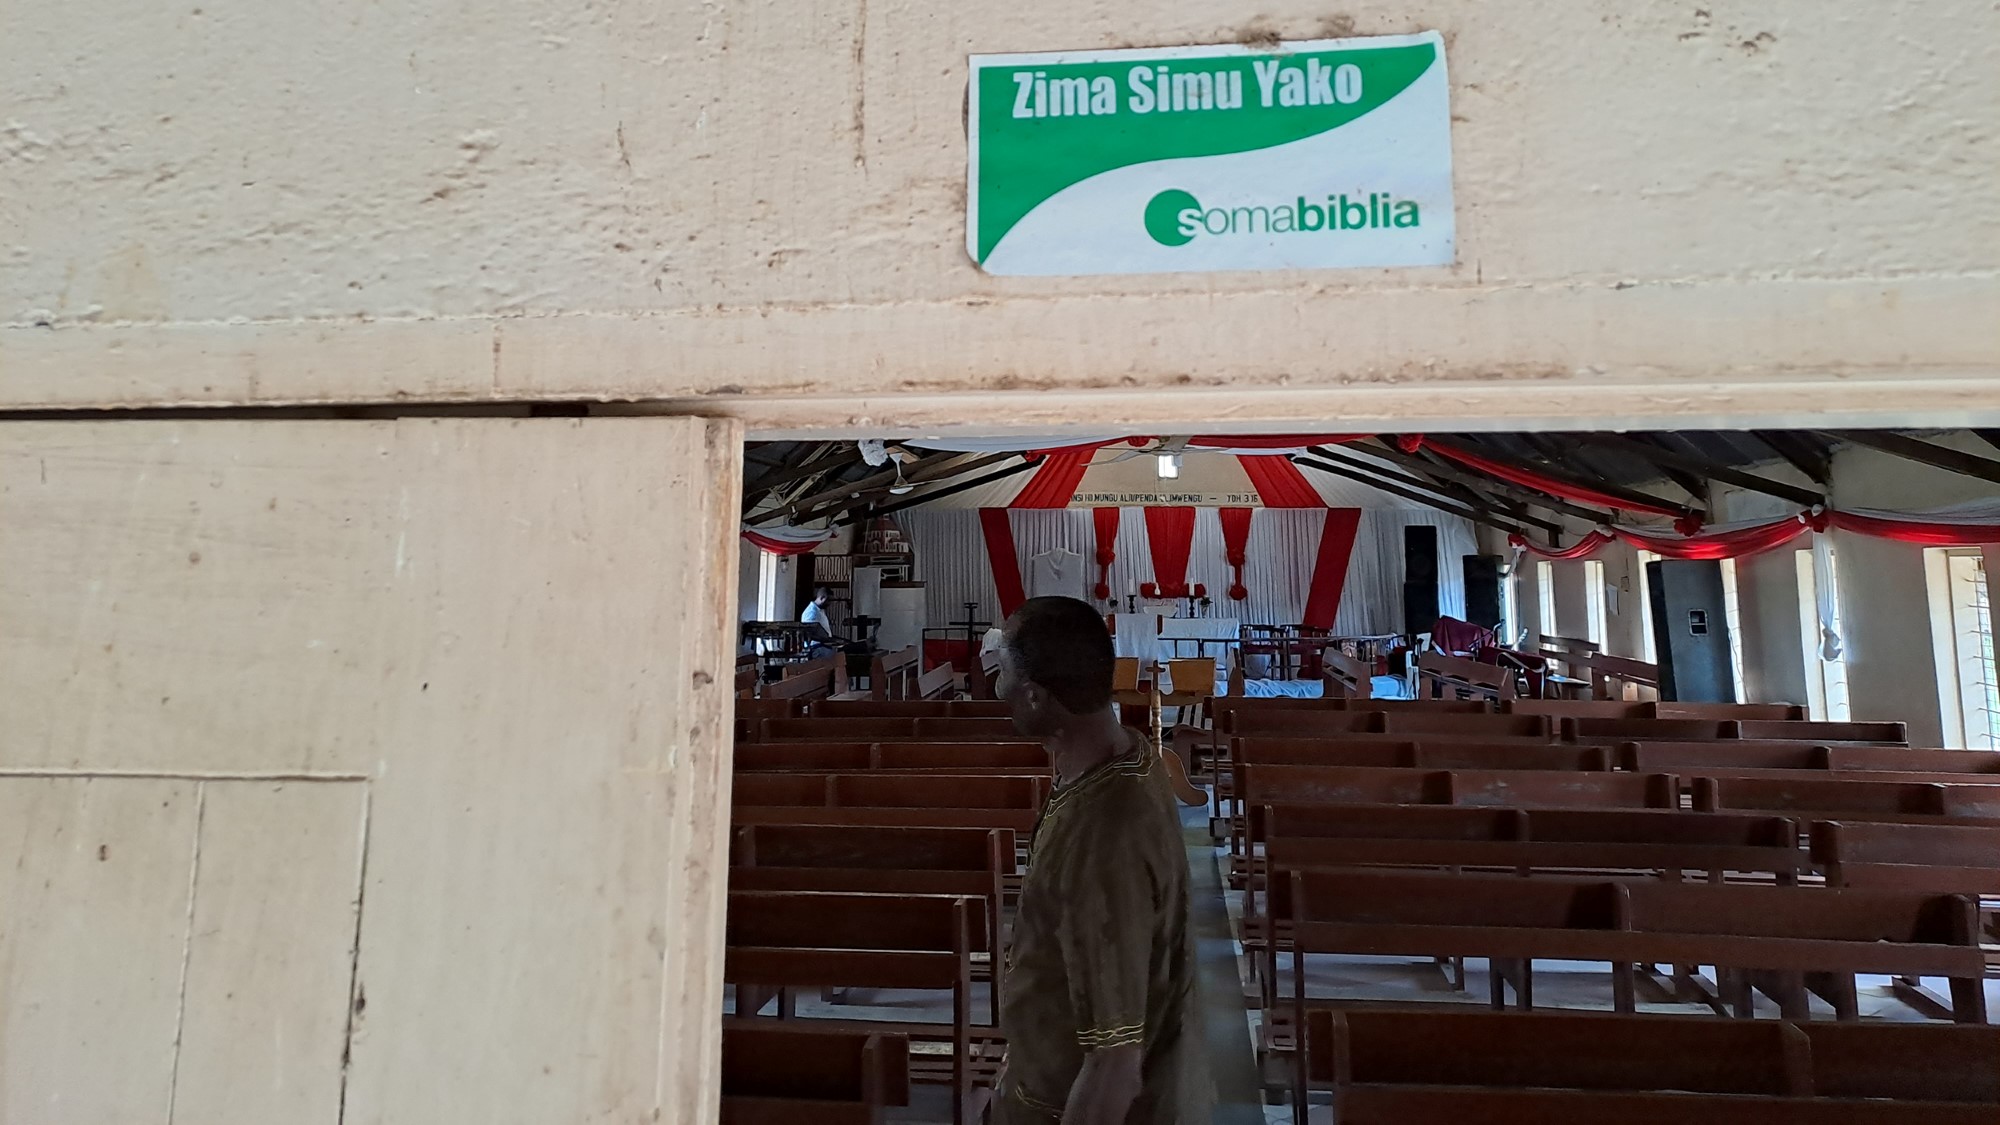 På vei inn i det gamle kirkebygget står det: «Zima simu yako – Soma Biblia». Oversatt: «Slå av telefonen din – les Bibelen».